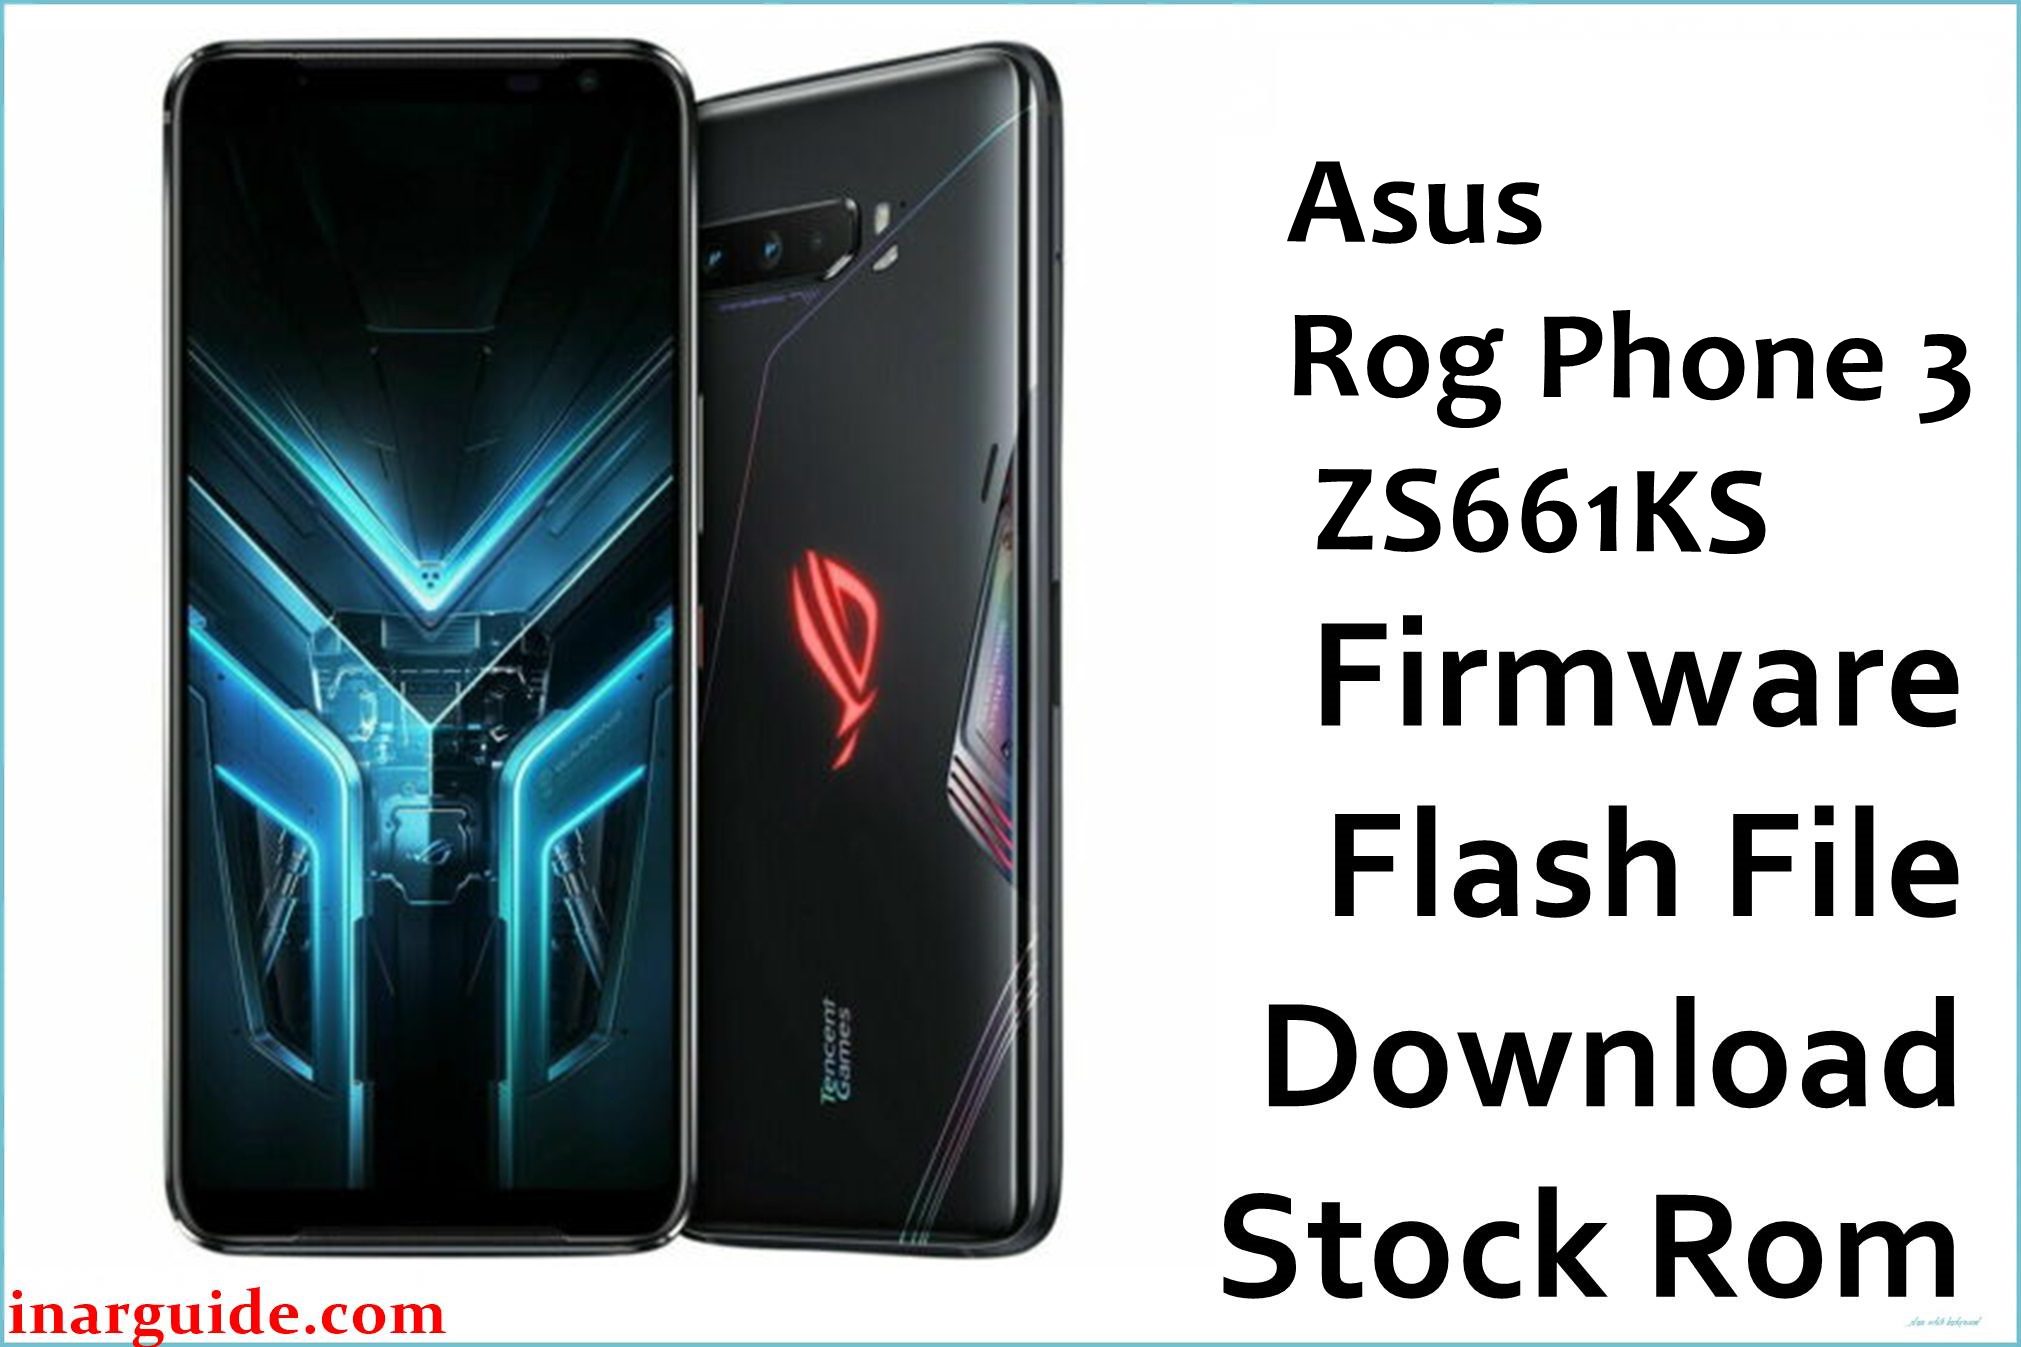 Asus Rog Phone 3 ZS661KS